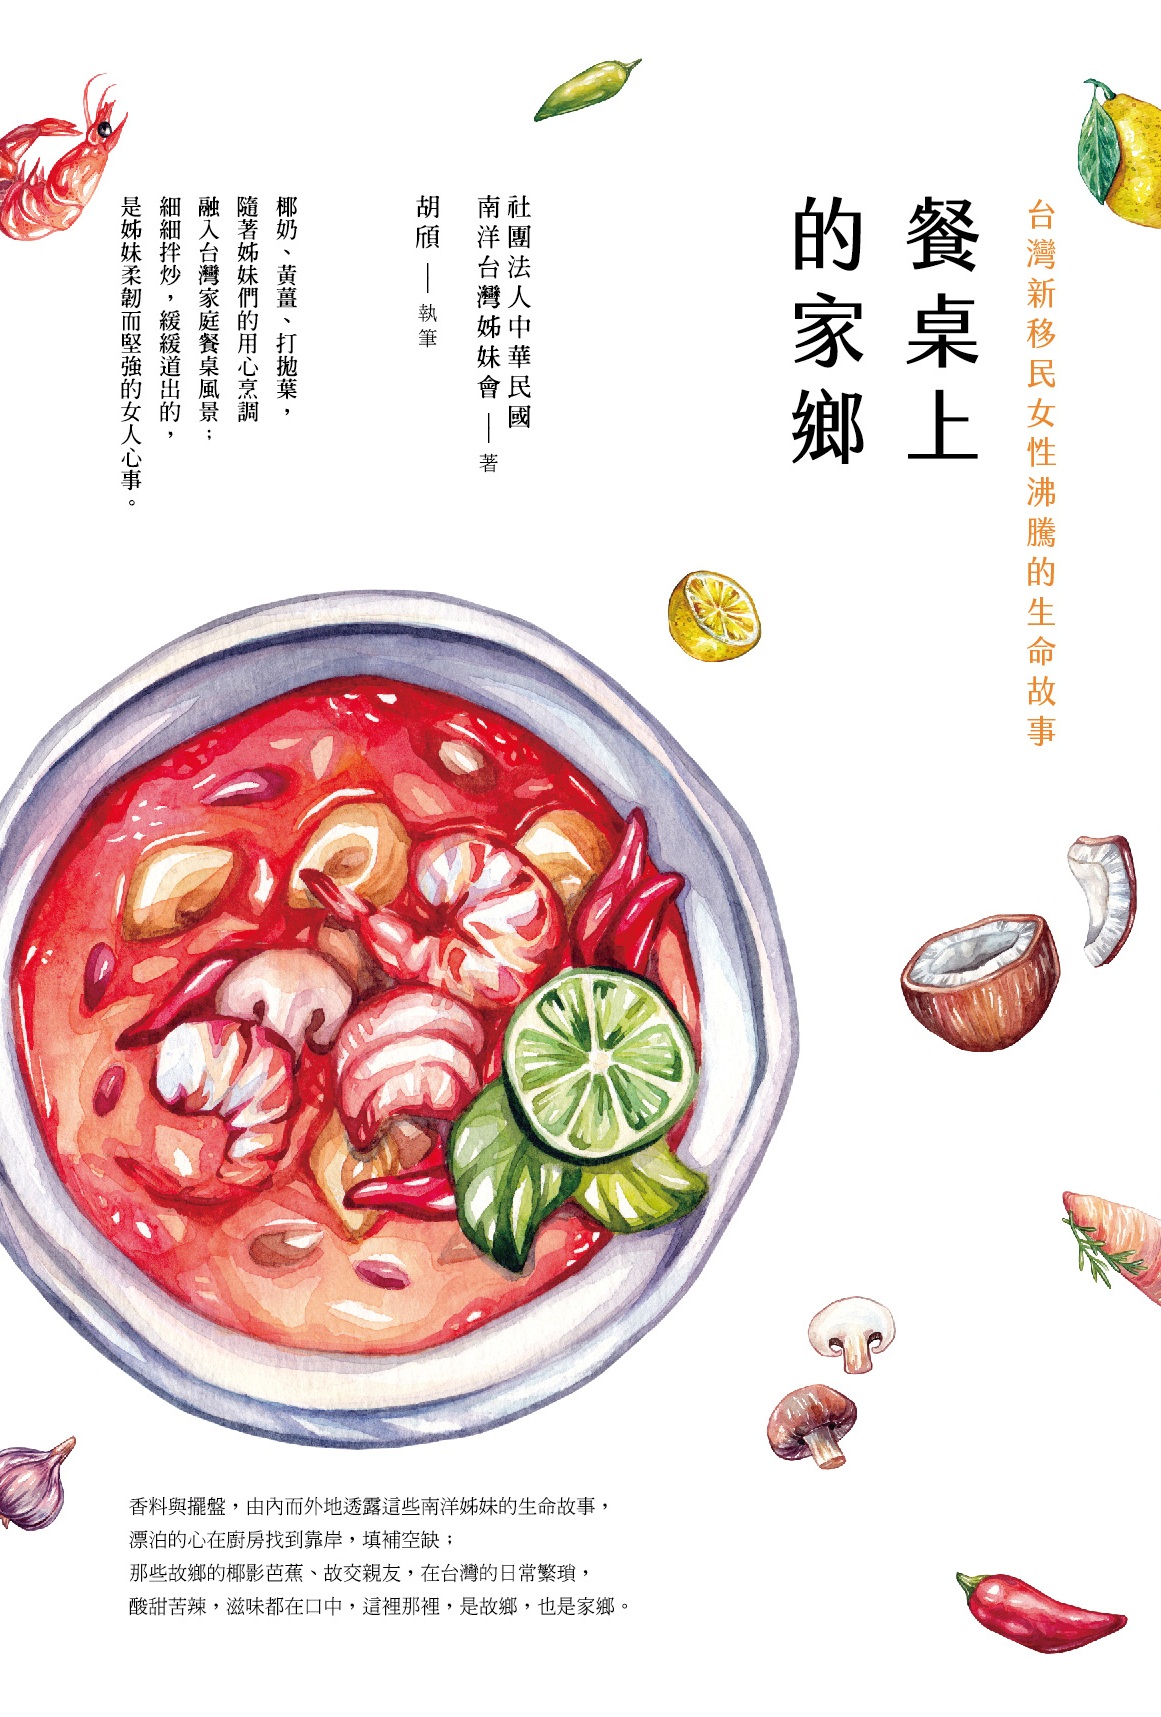 二月選書 在台灣尋找 餐桌上的家鄉 Bios Monthly